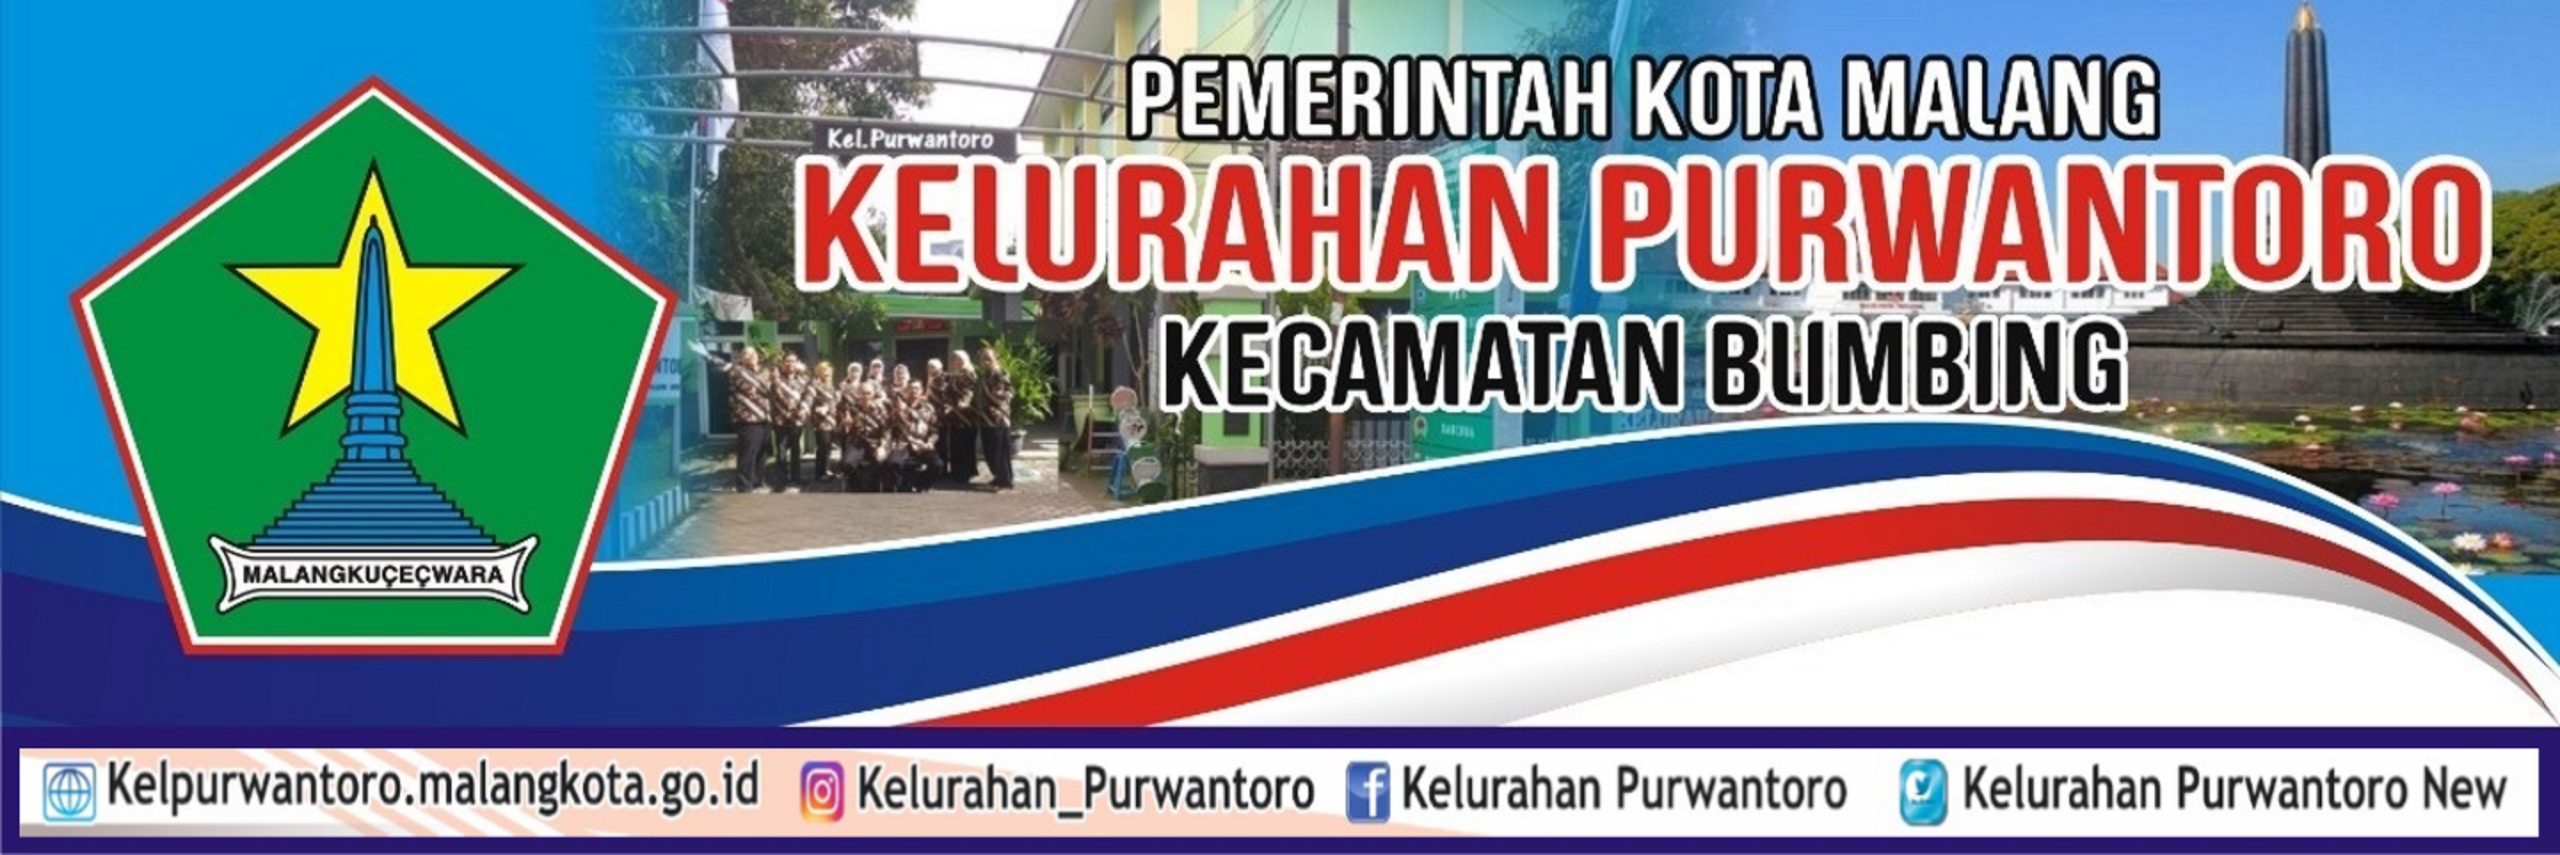 Selamat Datang di Website Kelurahan Purwantoro Kota Malang